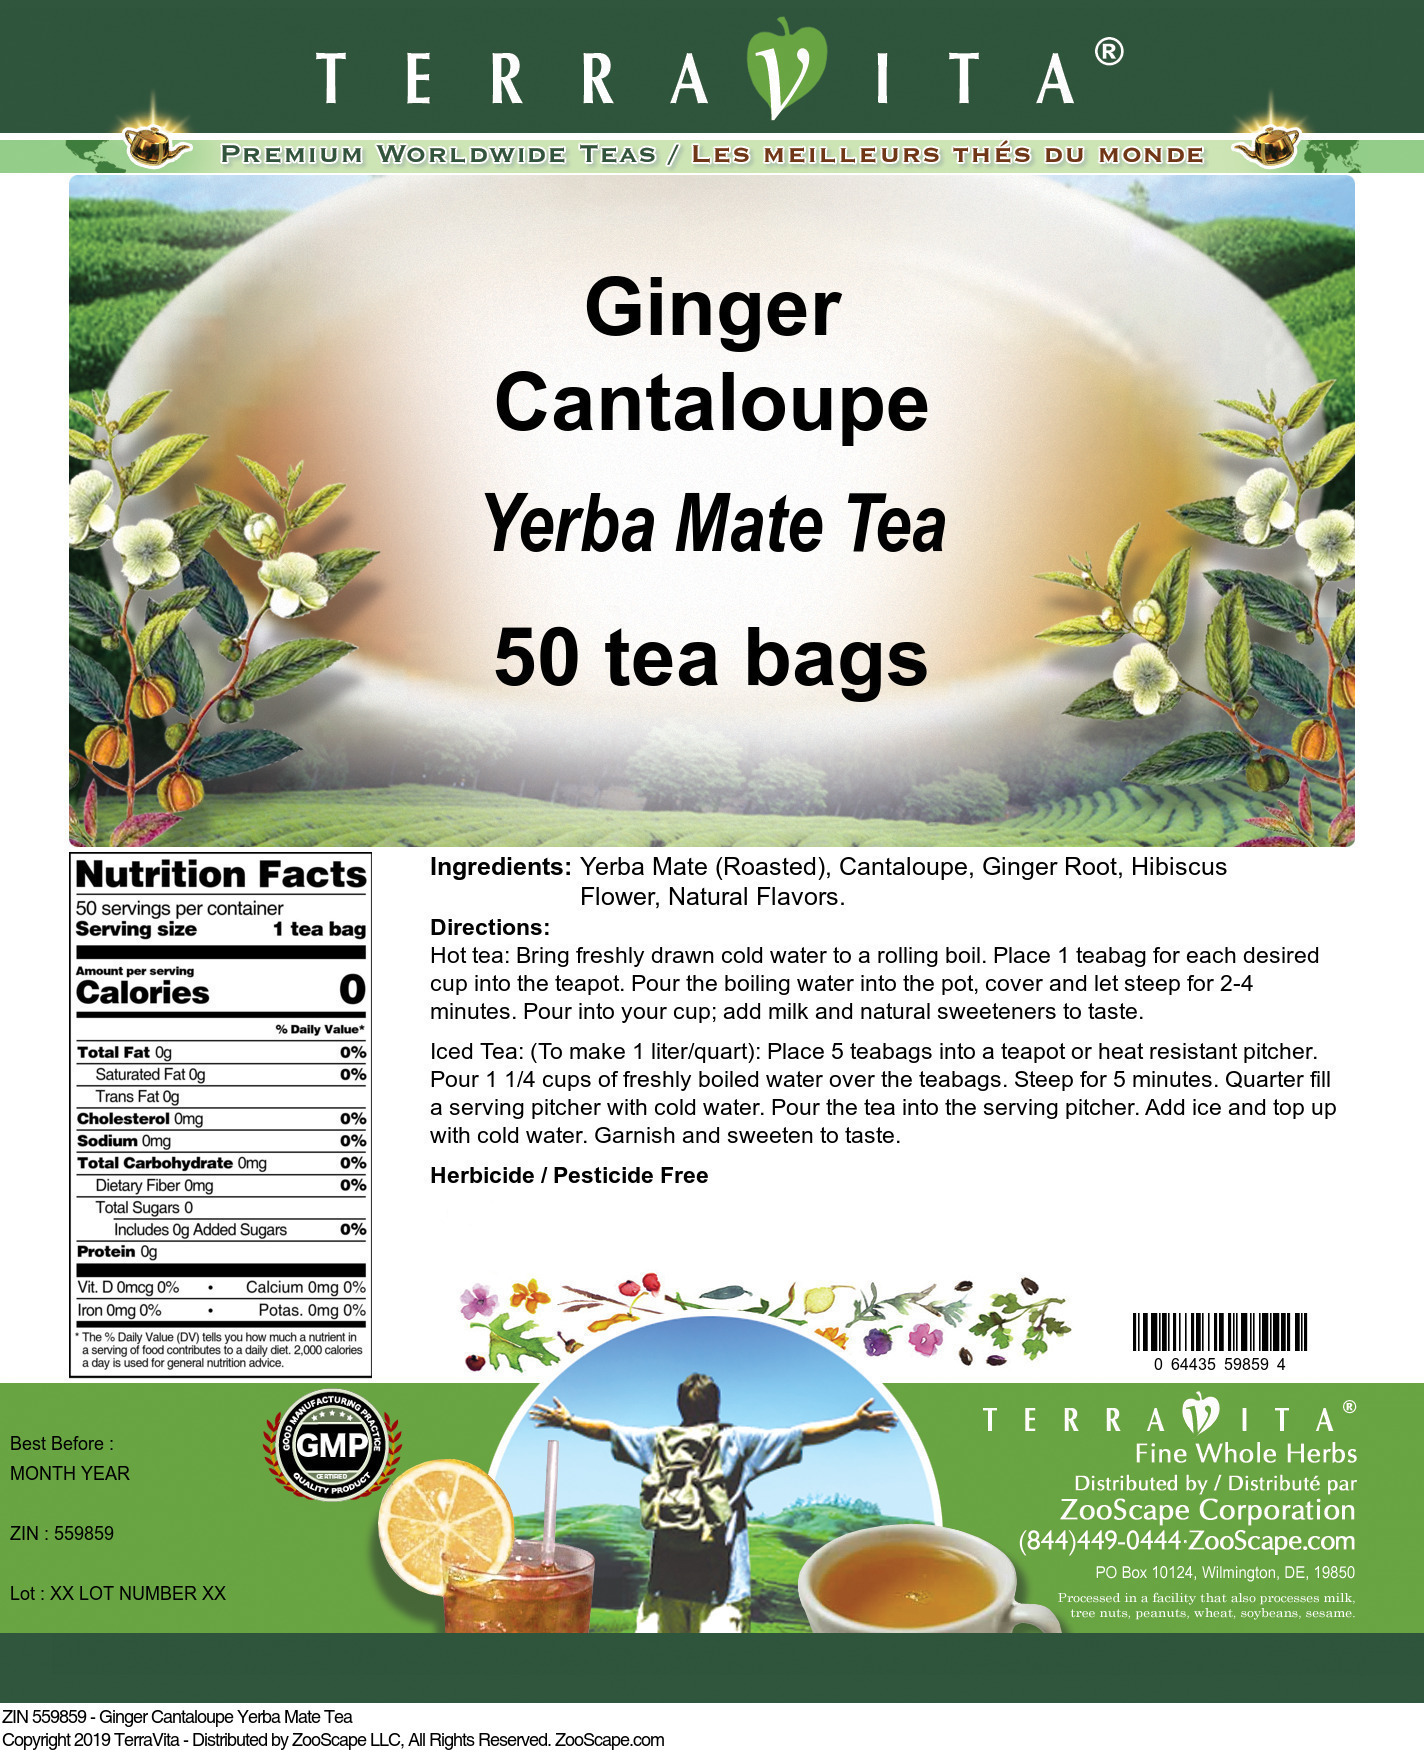 Ginger Cantaloupe Yerba Mate Tea - Label